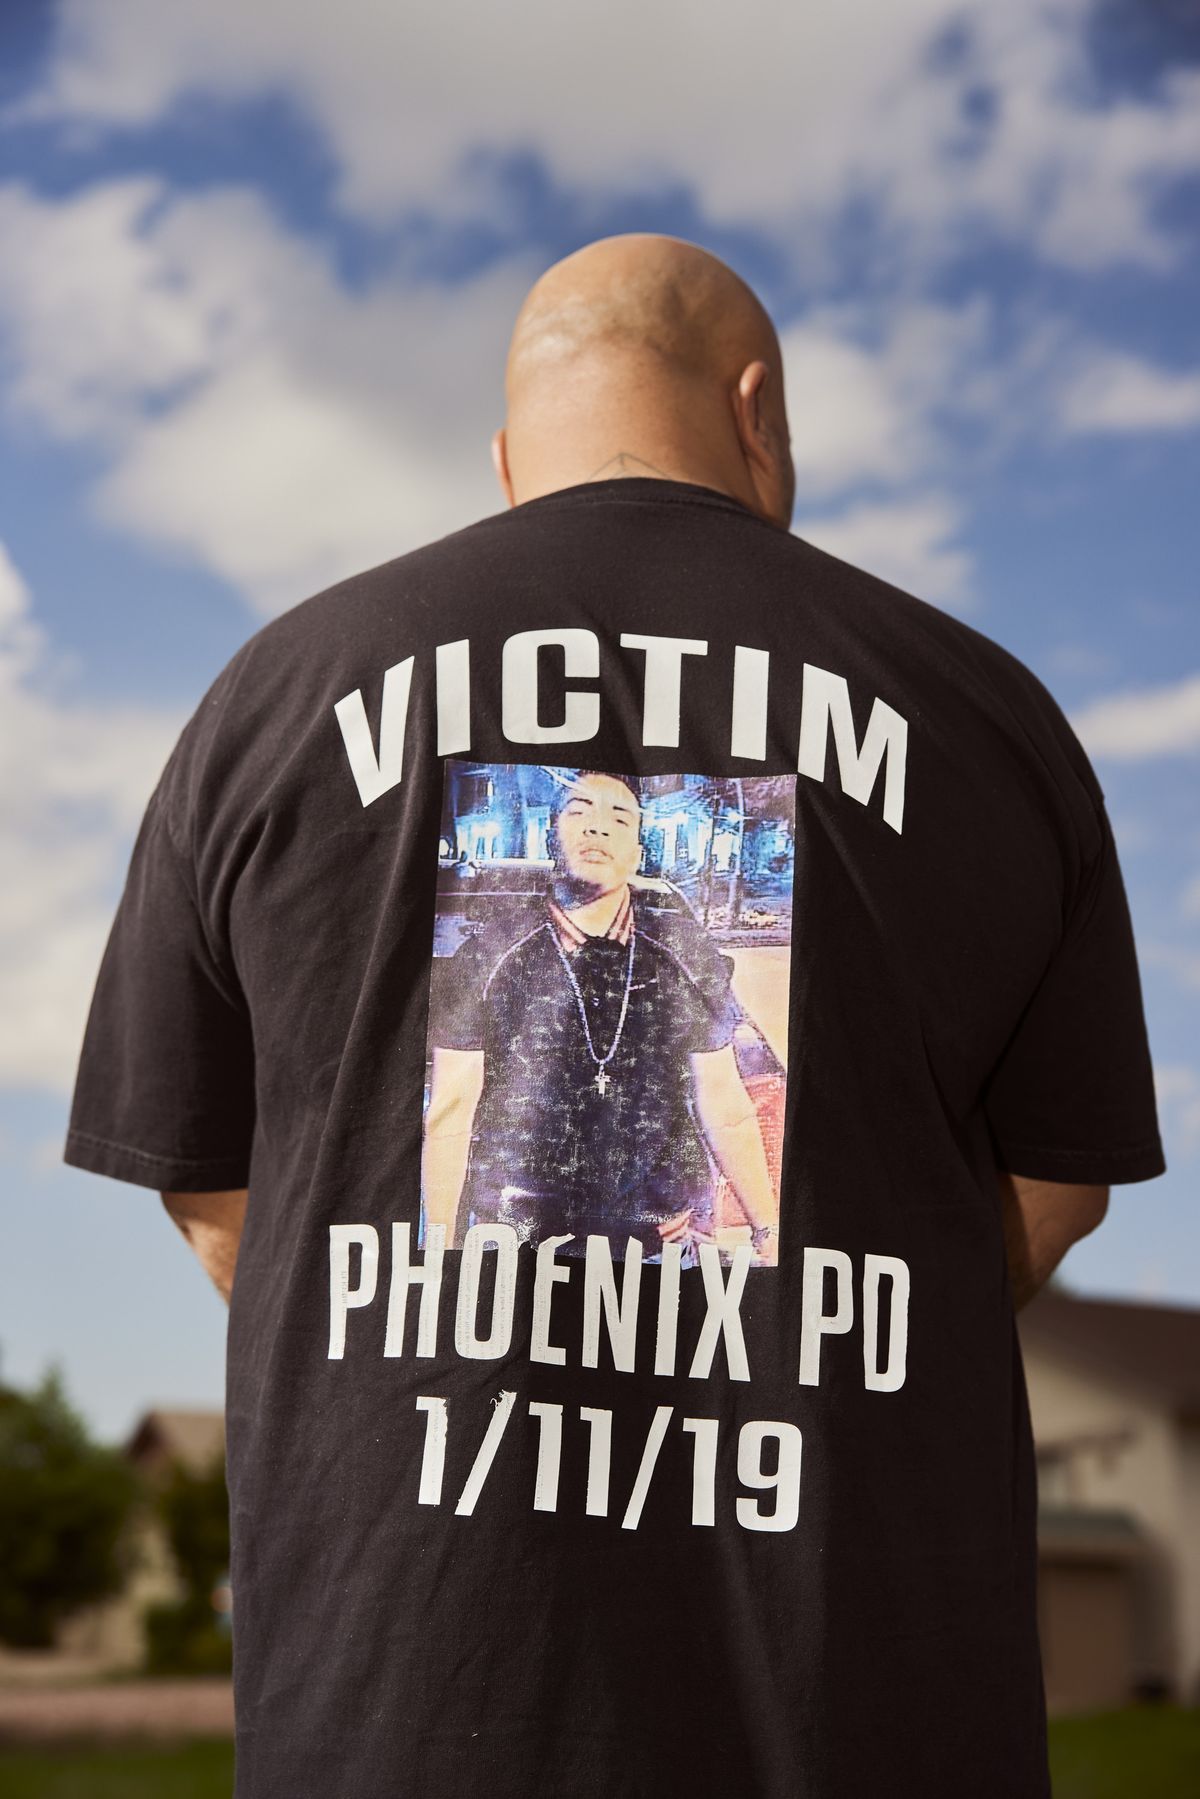 Roland fotografiado desde atrás, su camiseta dice Victim Phoenix PD 1/11/19, con una fotografía de Jacob.